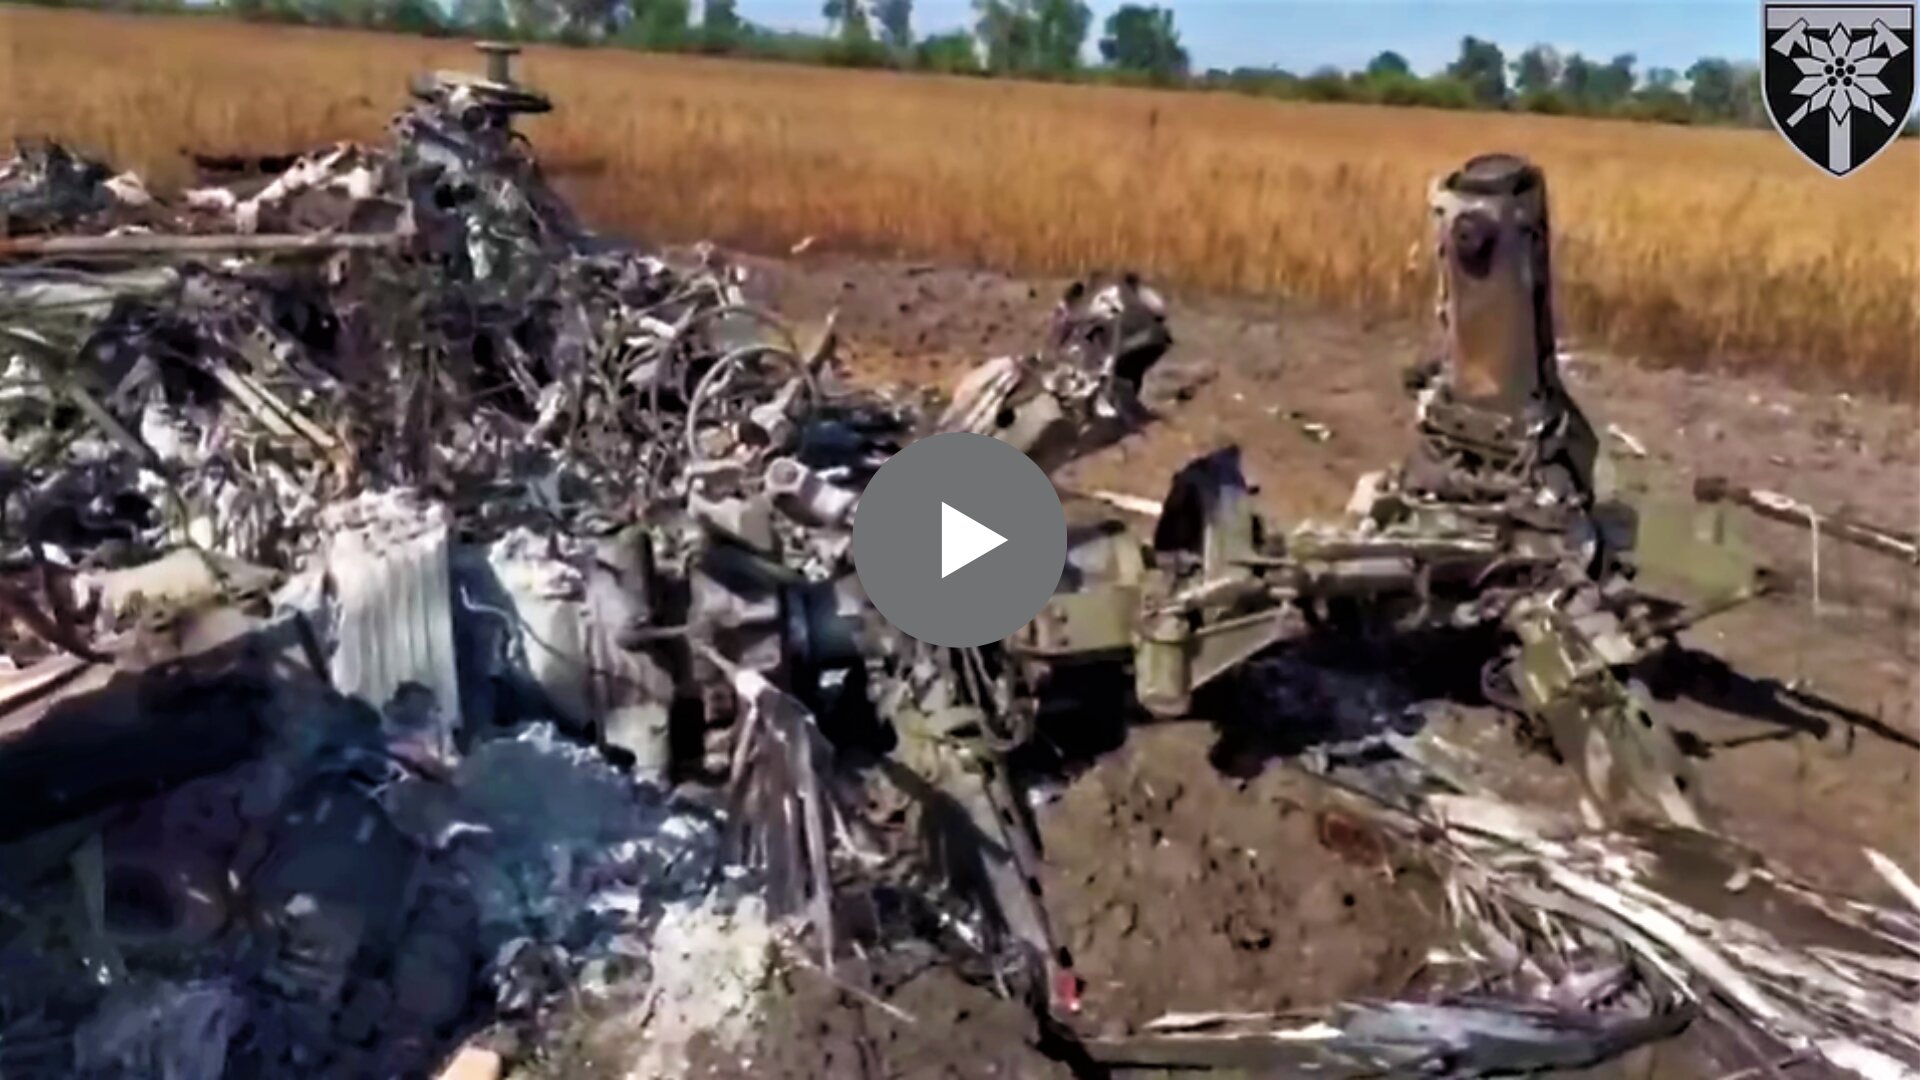 Відео з місця жорсткої “посадки” ворожого Ка-52 опублікували на сторінці 128 окремої гірсько-штурмової бригади у ФБ.